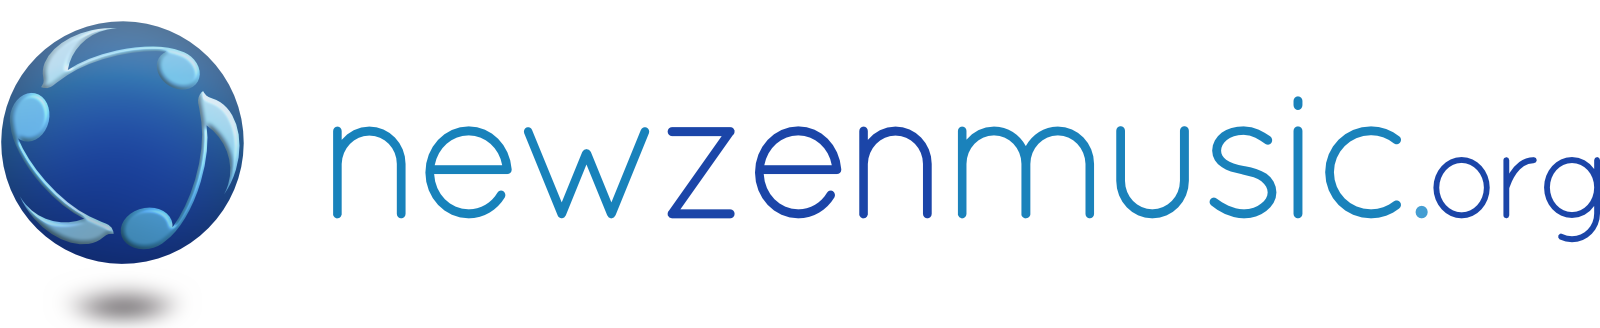 newzenmusic.org horizontal logo